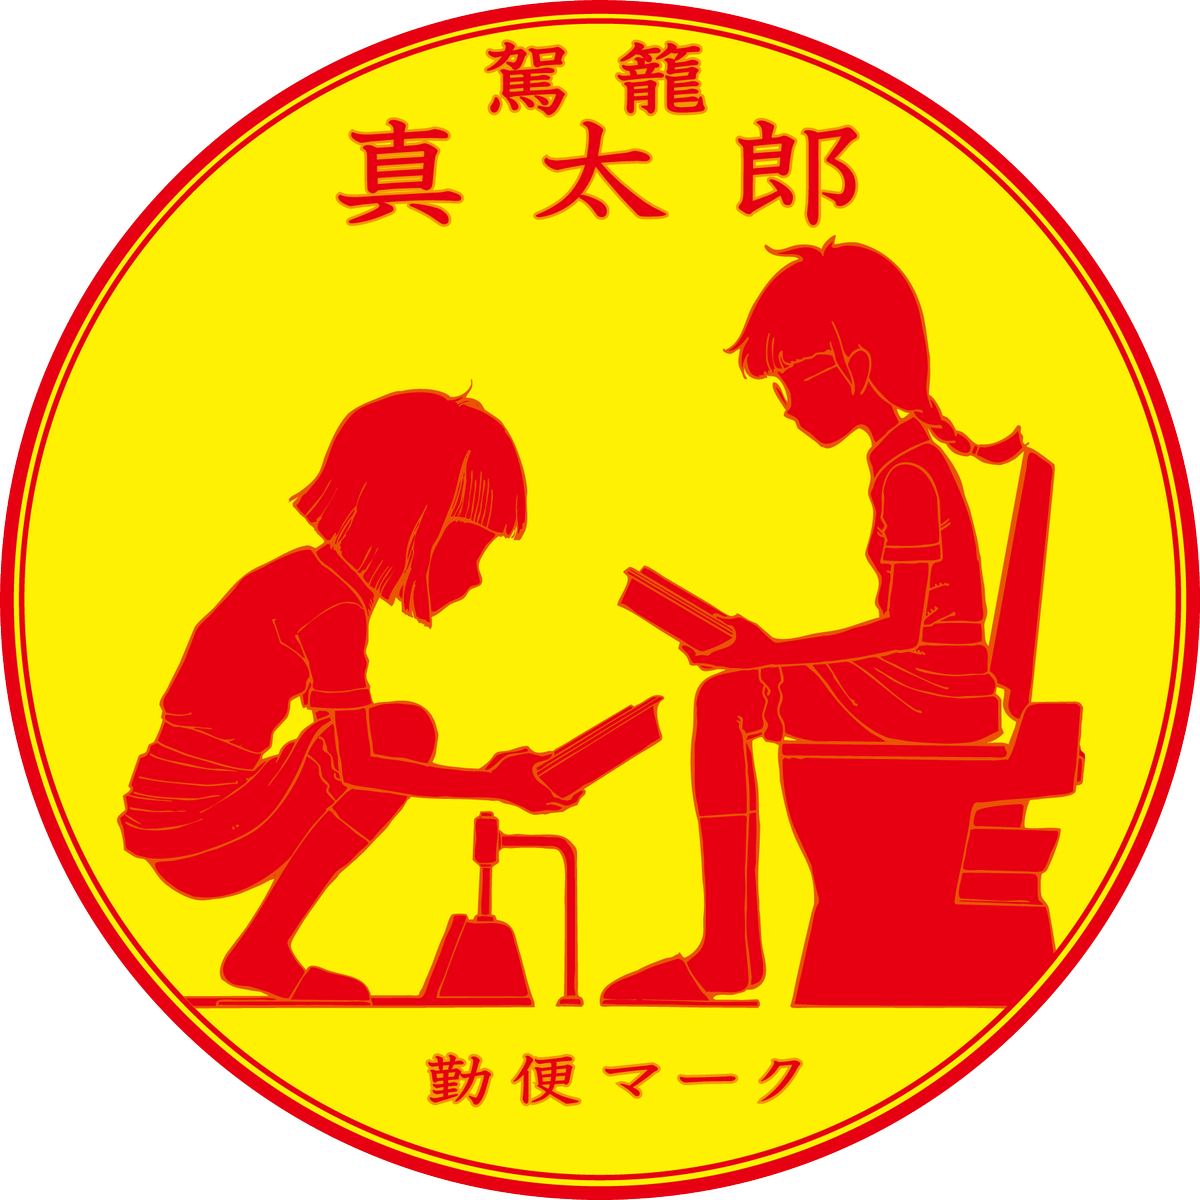 Blacklivesmatter Hiroshihootoo Pa Twitter で そのときカバーイラストをアレンジして 小学館の 勉強マーク をパロって 冗談でつくった 勤便マーク がこれ 小学館の学年誌編集部フロアの女子トイレに まあ 使えないよね